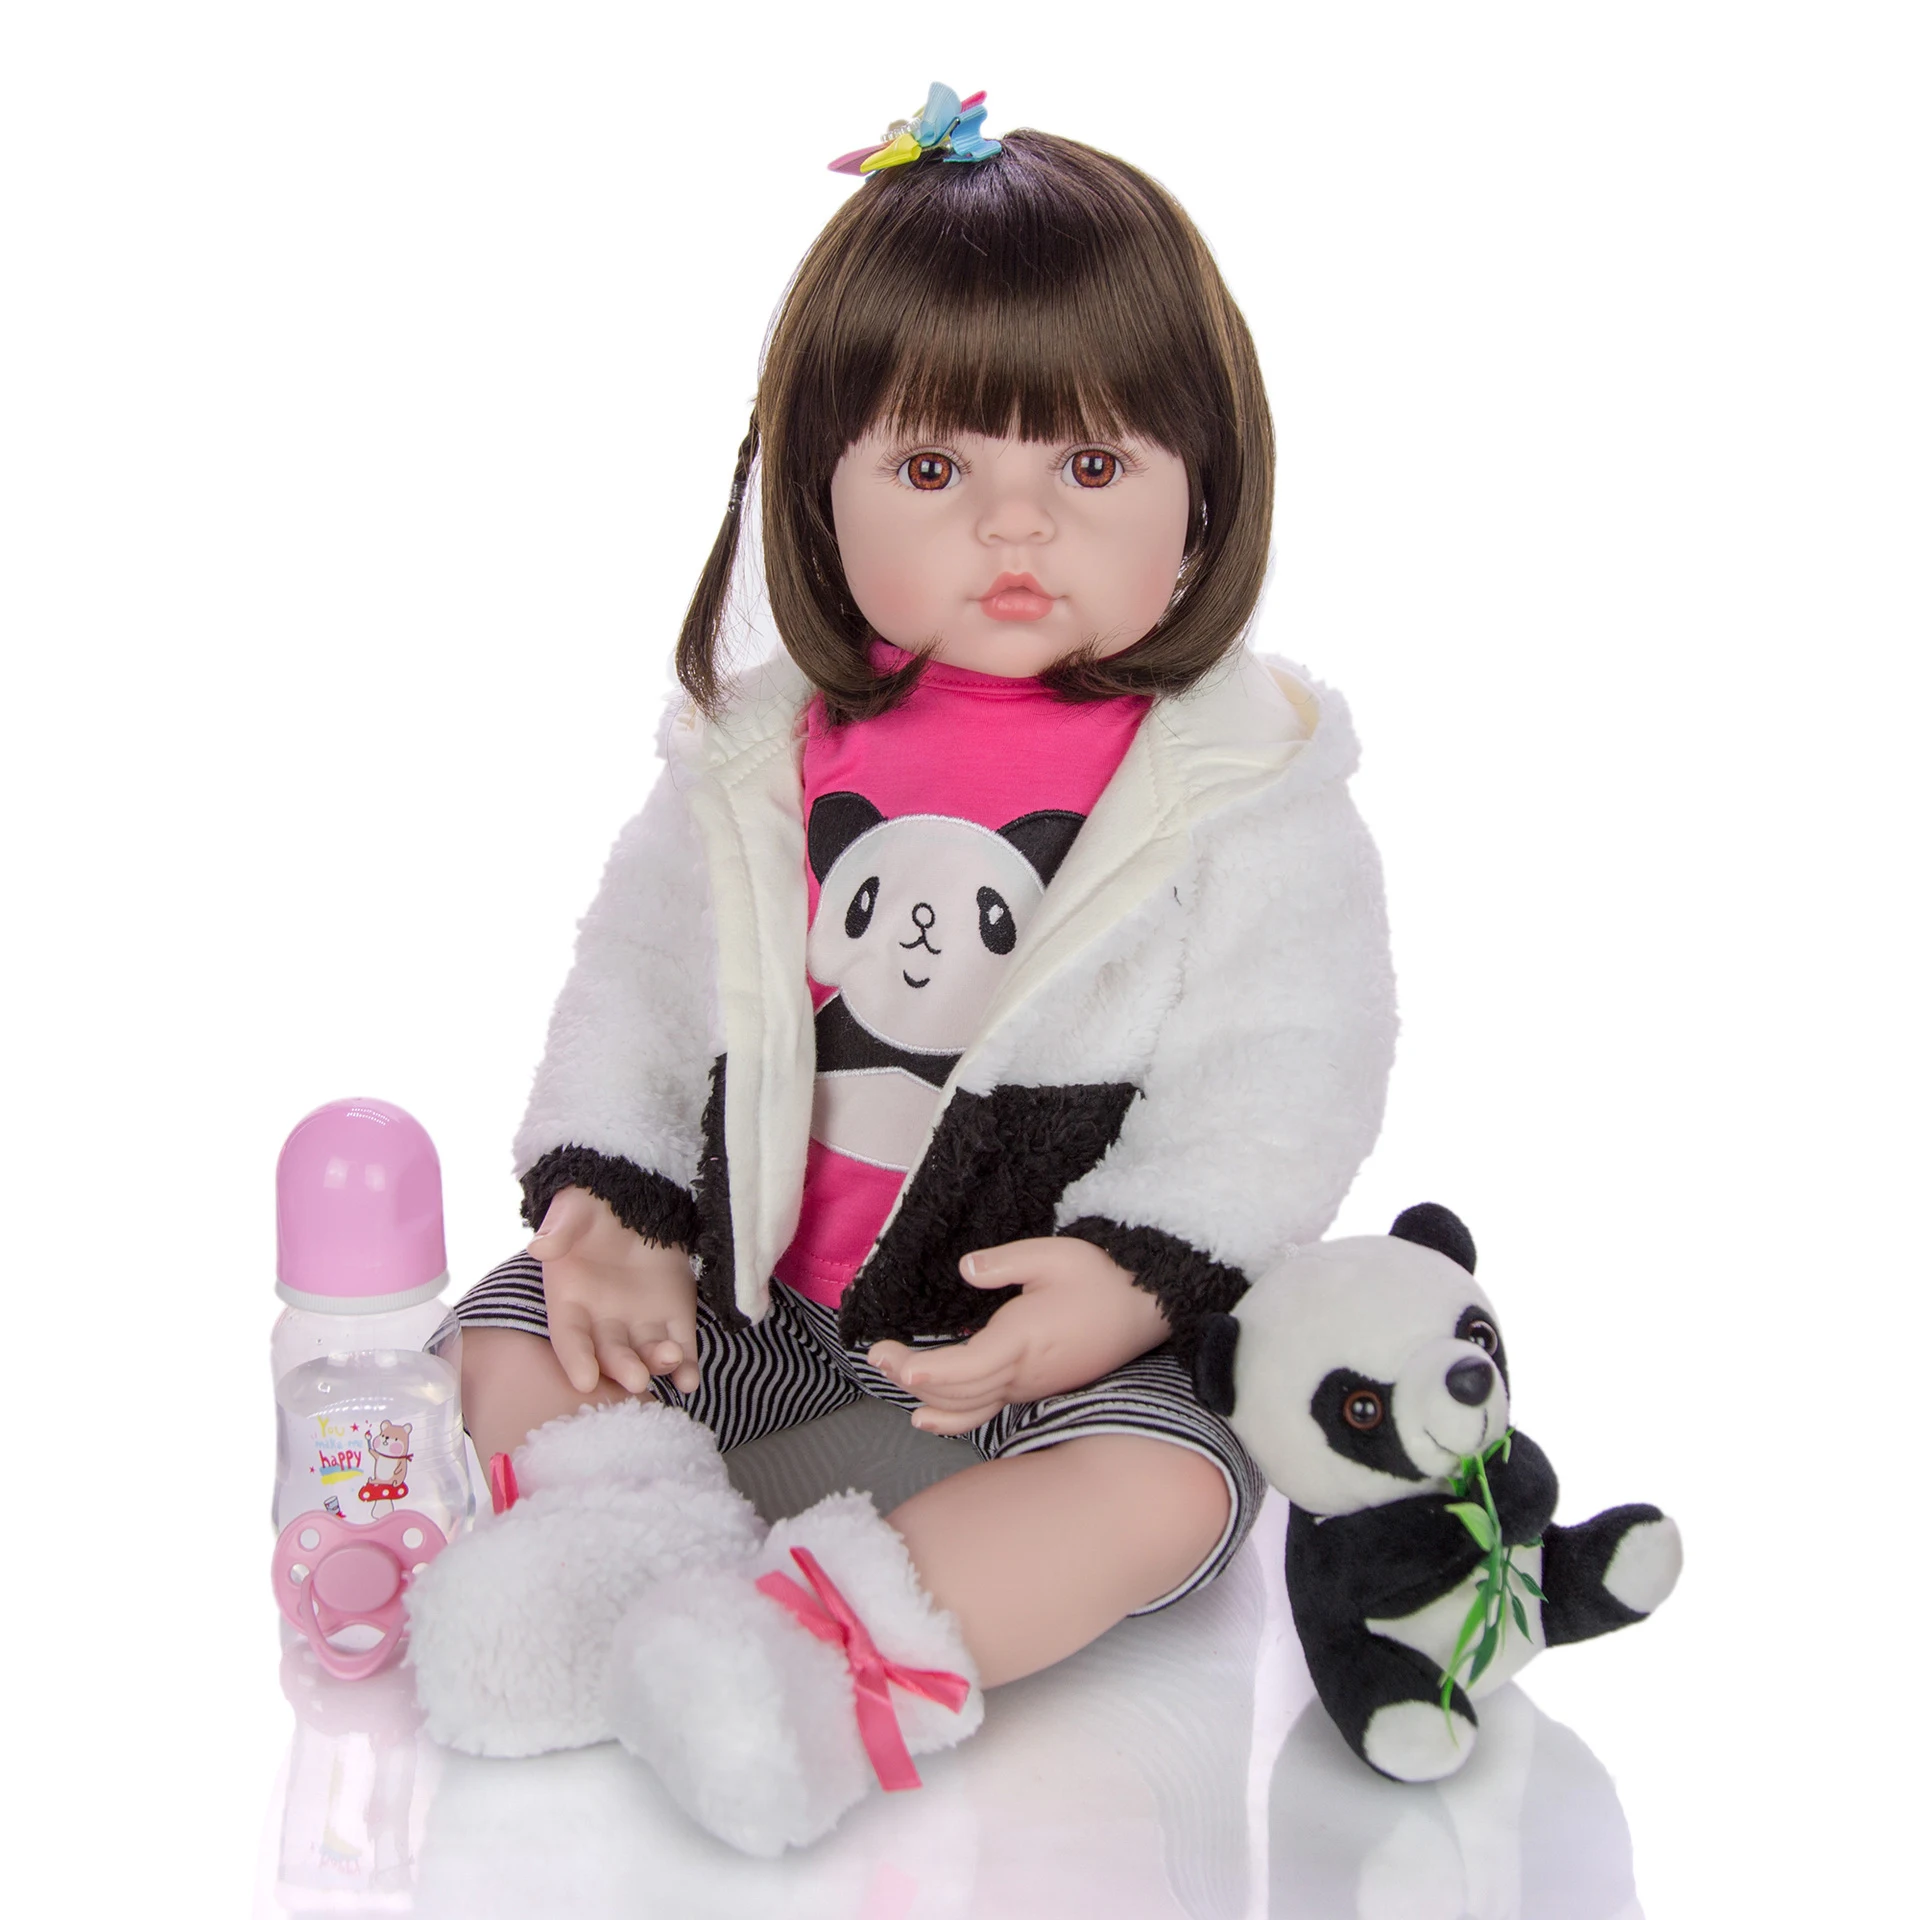 

KEIUMI 24 дюйма Bebe Reborn Baby Girl Doll 60 см, мягкая виниловая силиконовая ткань, кукла принцессы, реалистичные детские куклы, игрушки